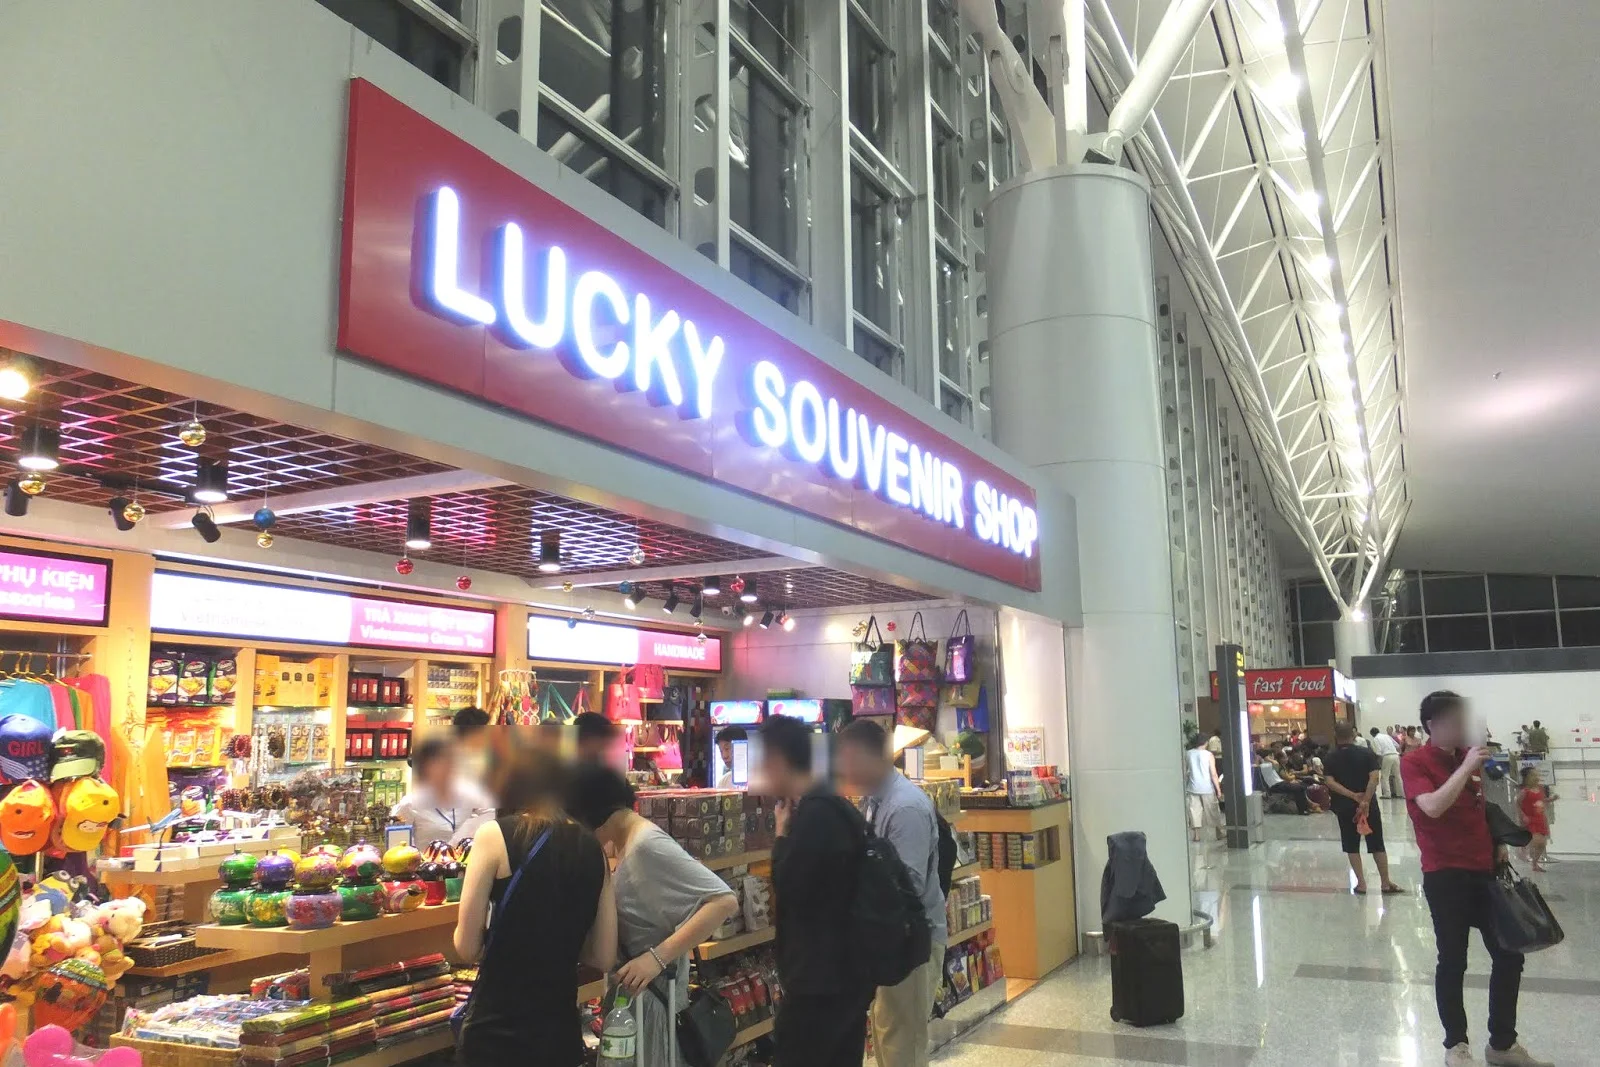 noibaiairport-lucky-souvenir-shop ノイバイ空港のお土産屋さん